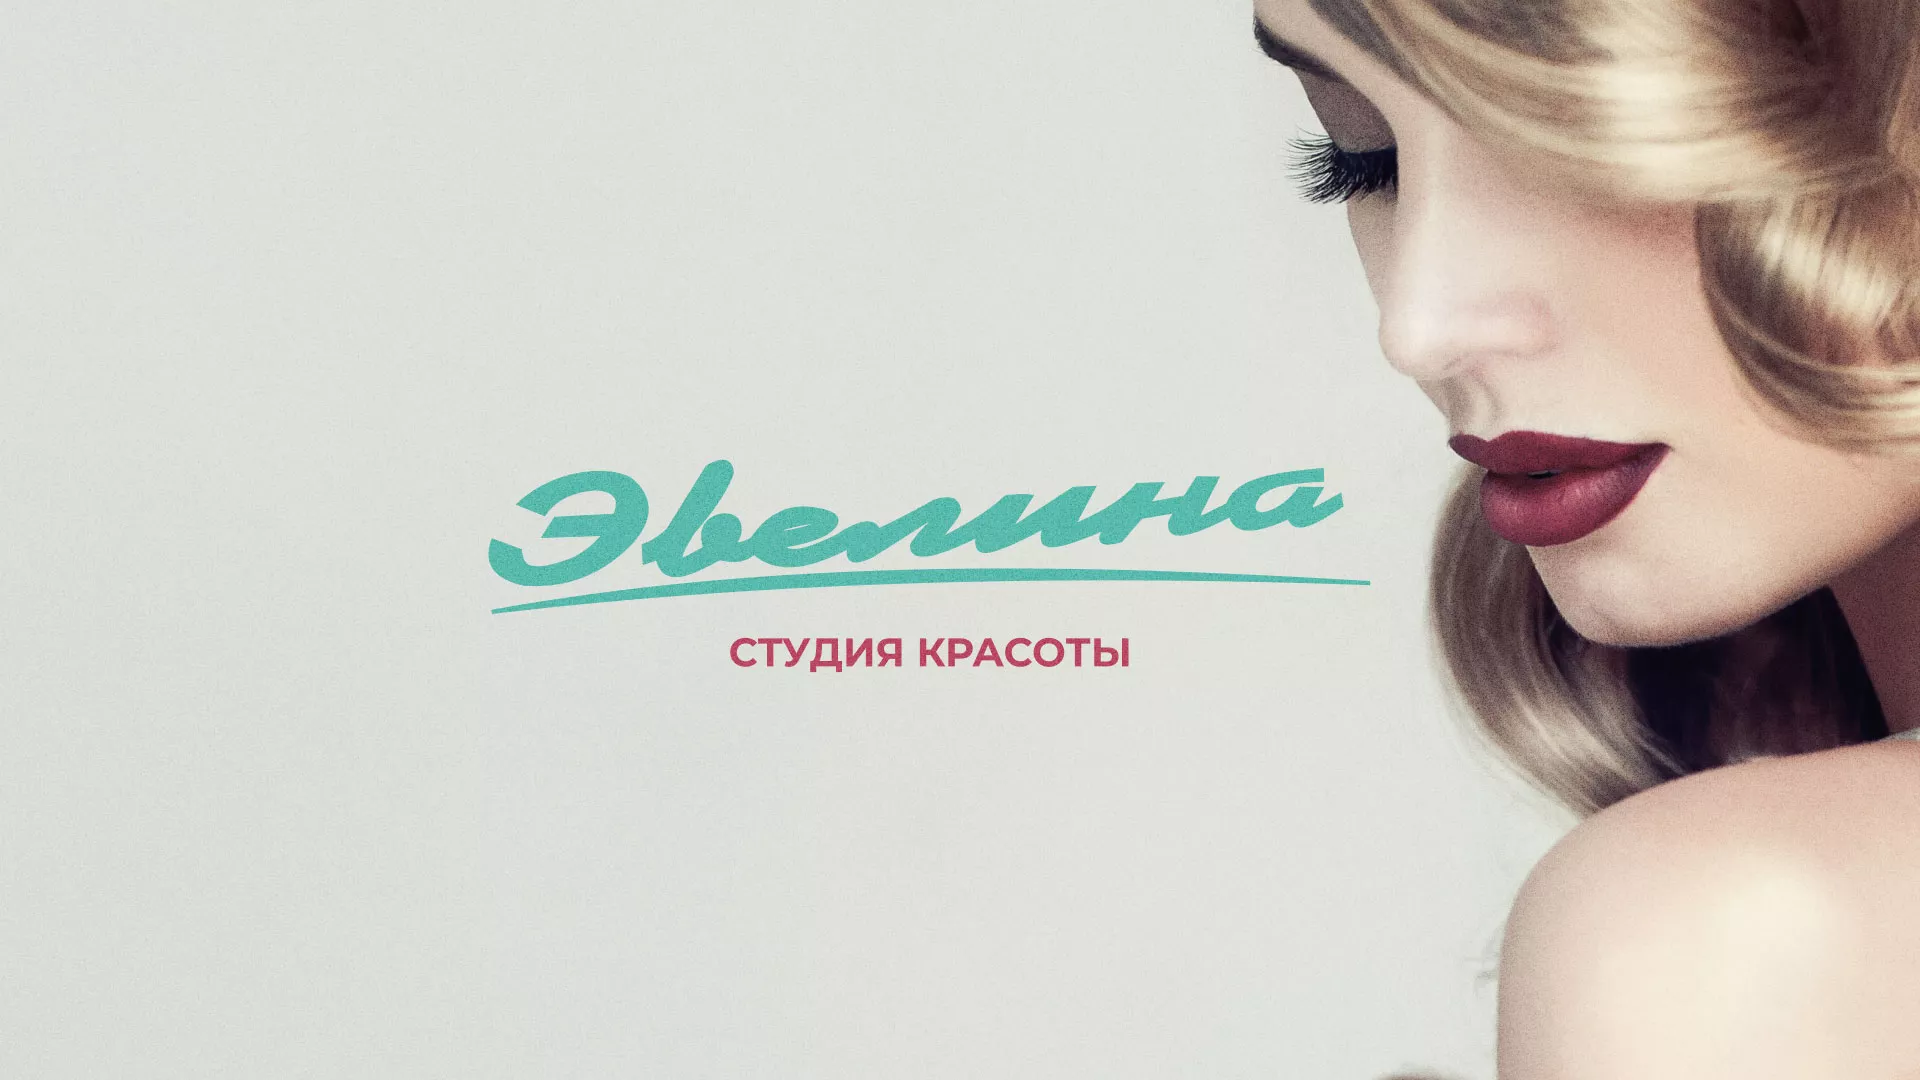 Разработка сайта для салона красоты «Эвелина» в Ханты-Мансийске